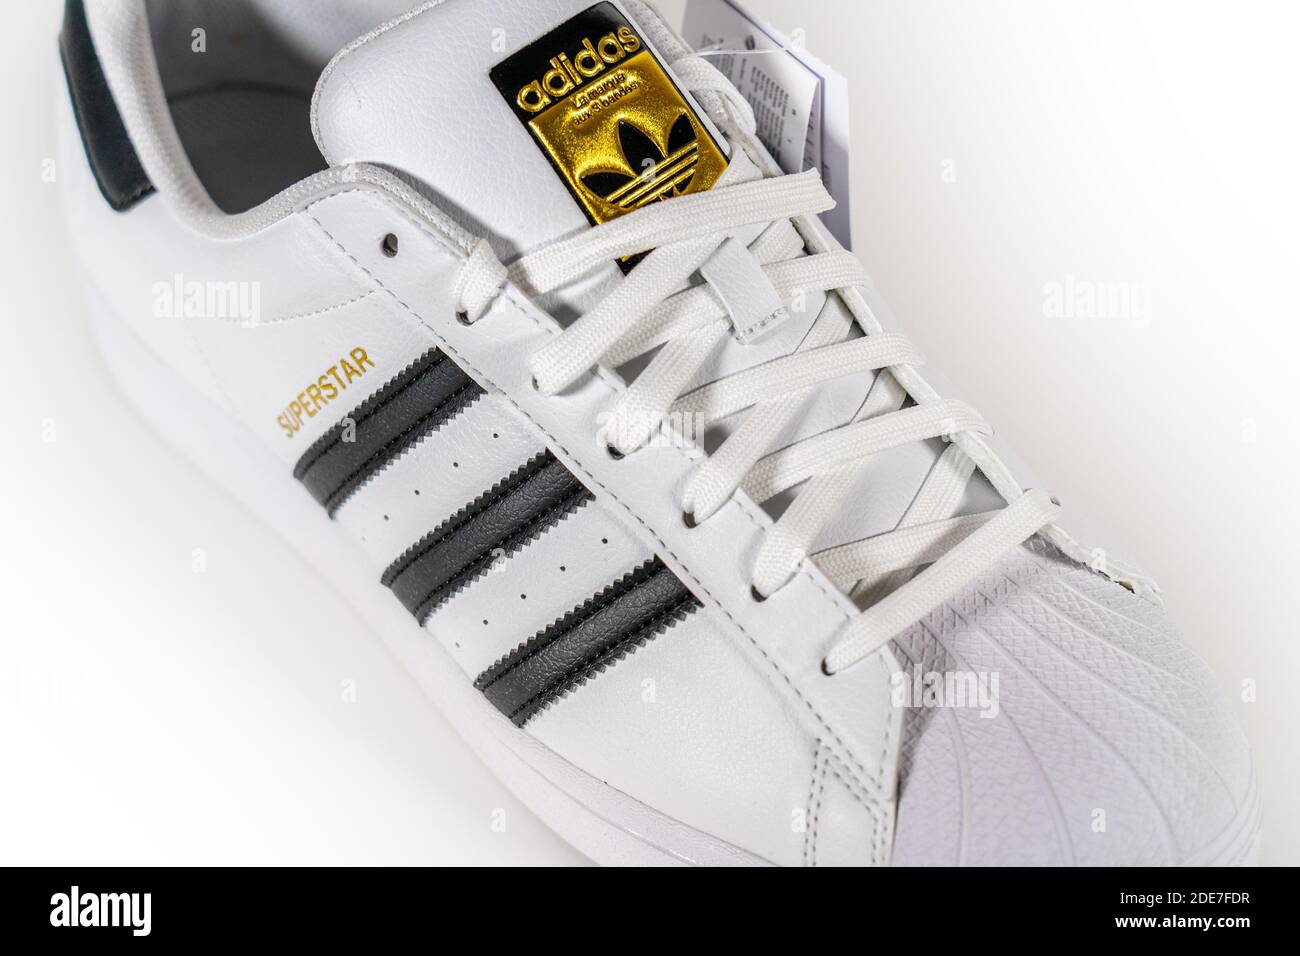 Adidas Superstar - famoso modelo de sneaker producido por el alemán de equipos y accesorios Adidas. Calzado de baloncesto retro, en producción desde 1969 - Moscú, Rusia - Noviembre 2020 Fotografía de stock - Alamy